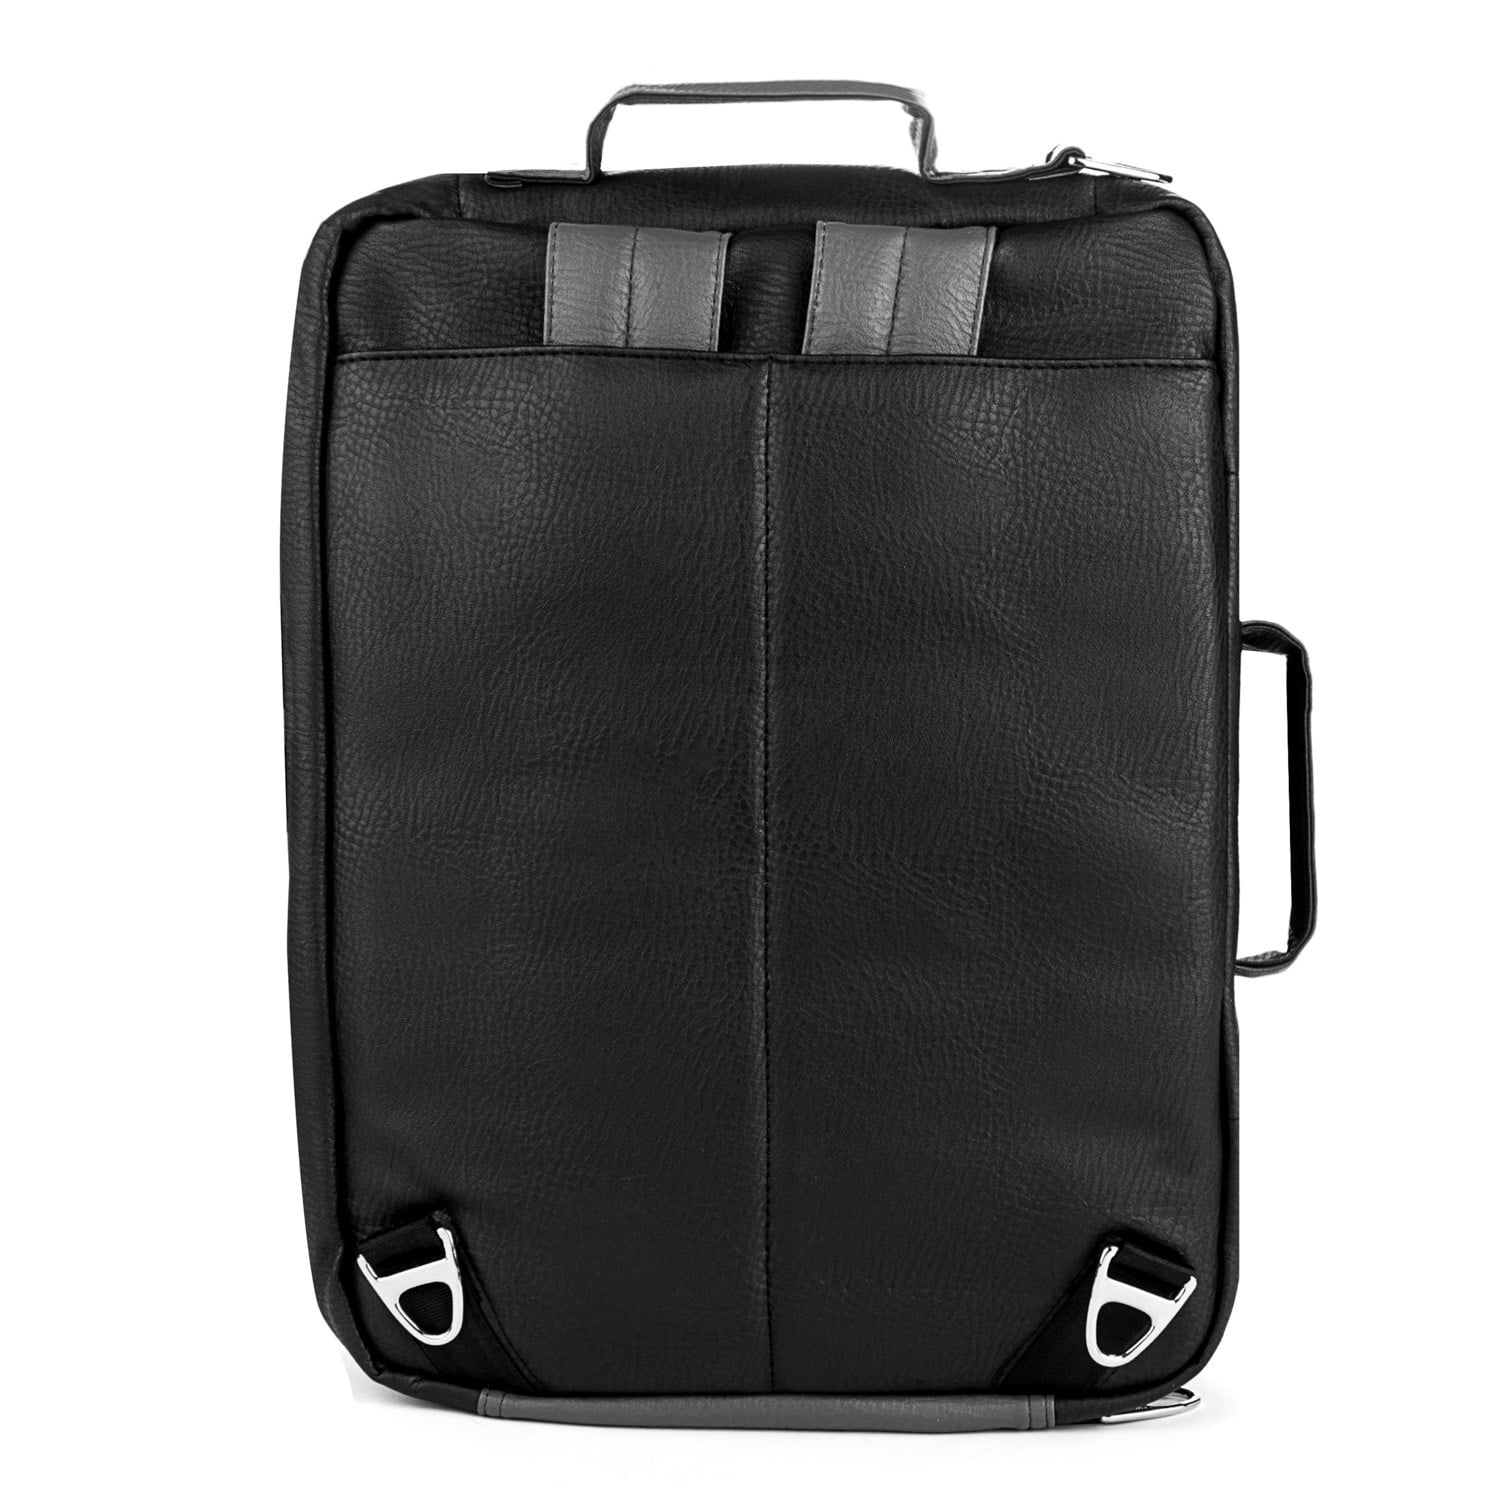 Quadra Executive Digital Case Bag 